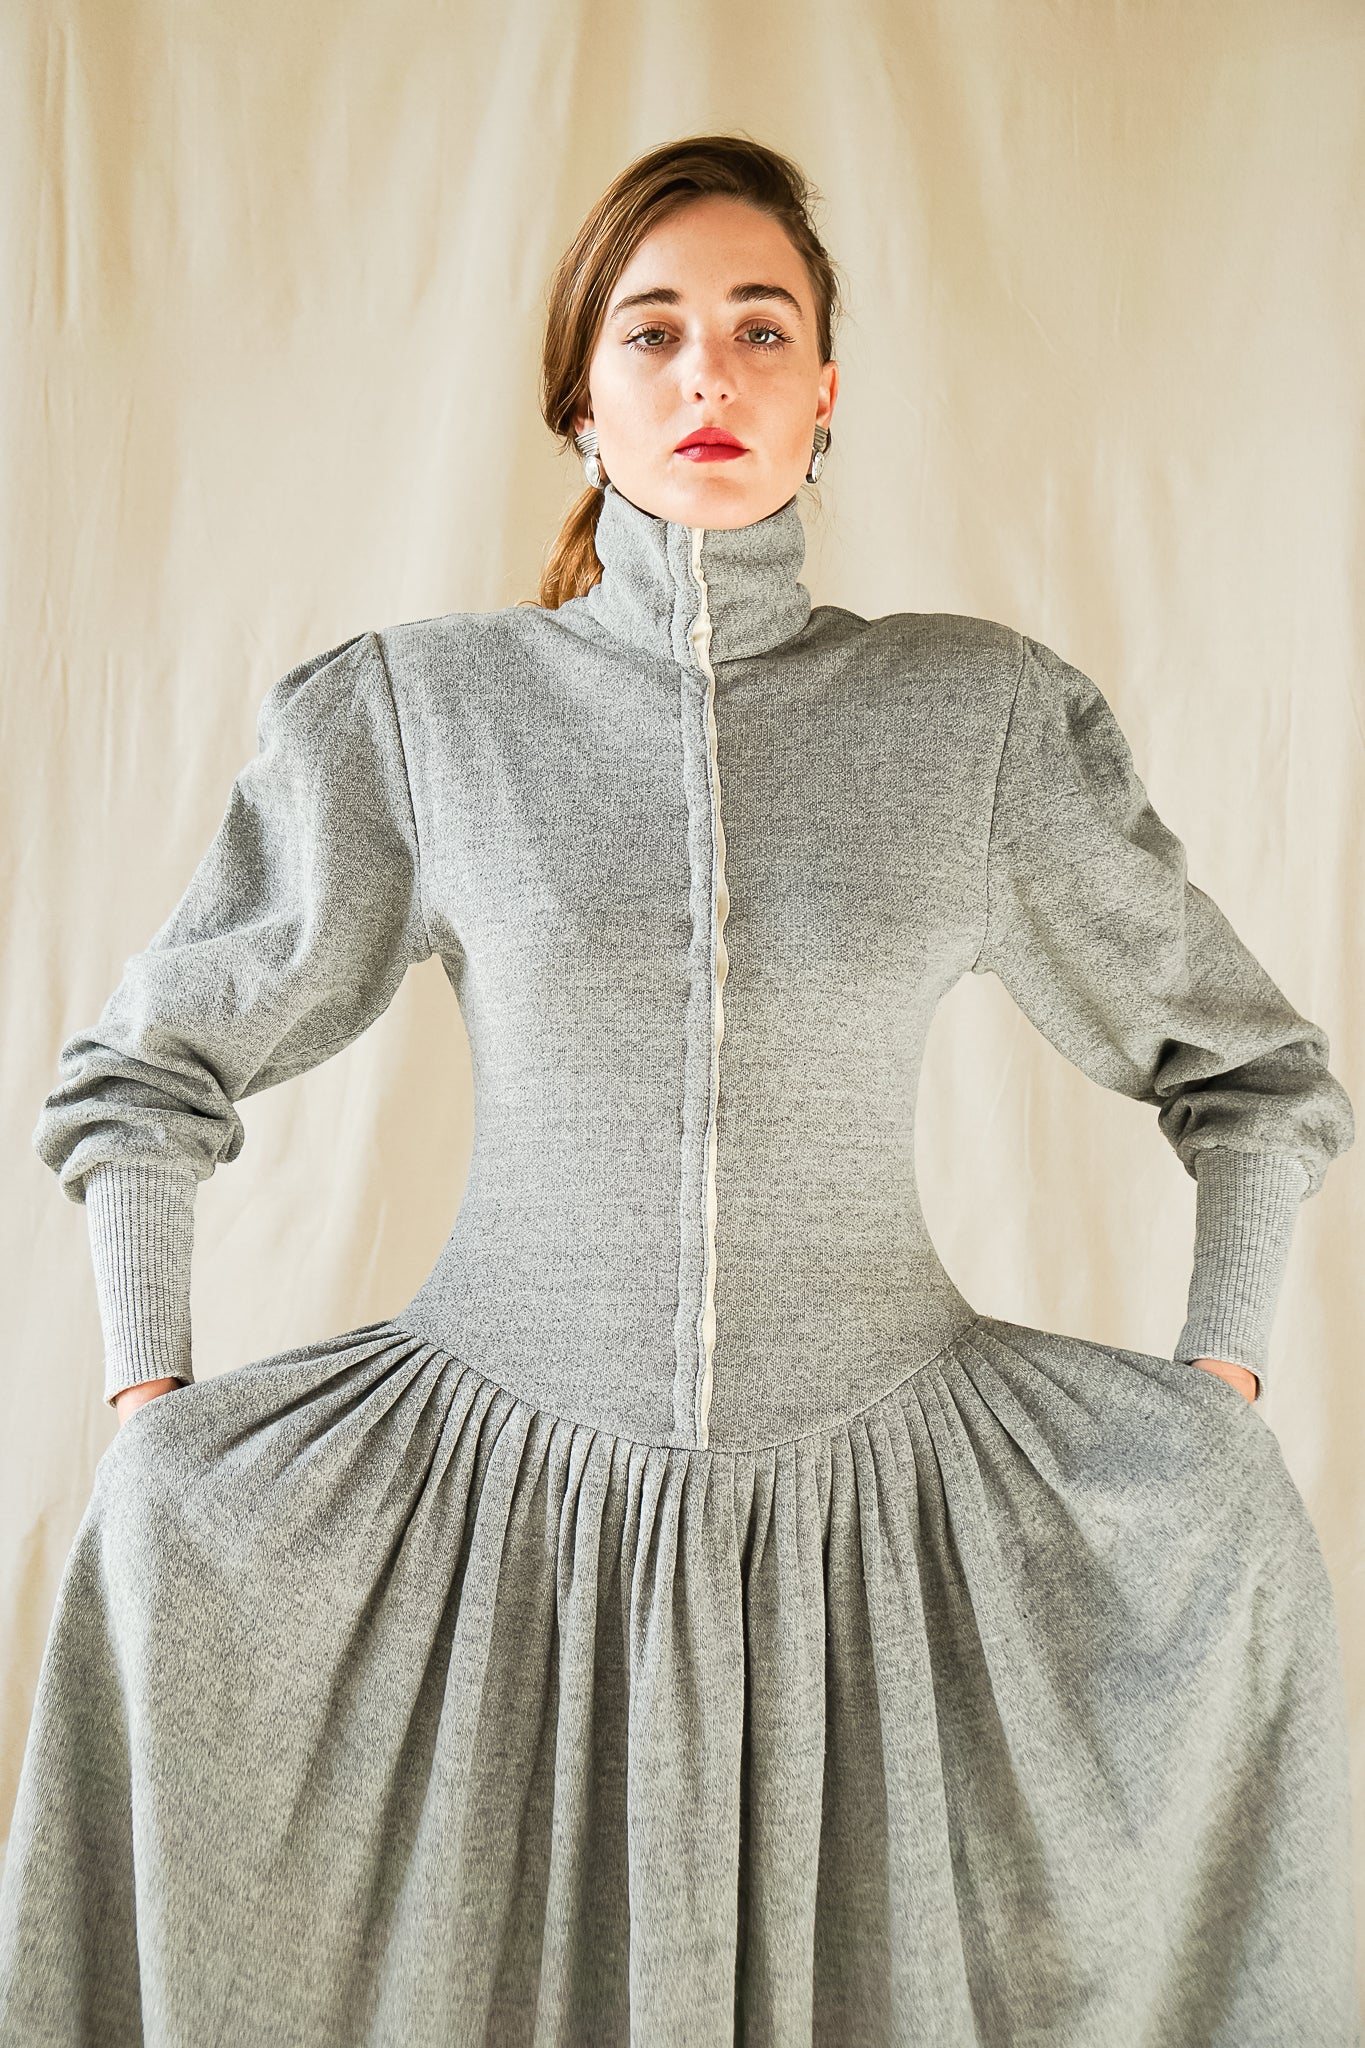 Recess Vintage Consignment Girl wearing grey Norma Kamali iconic 80s sweatshirt fleece dress